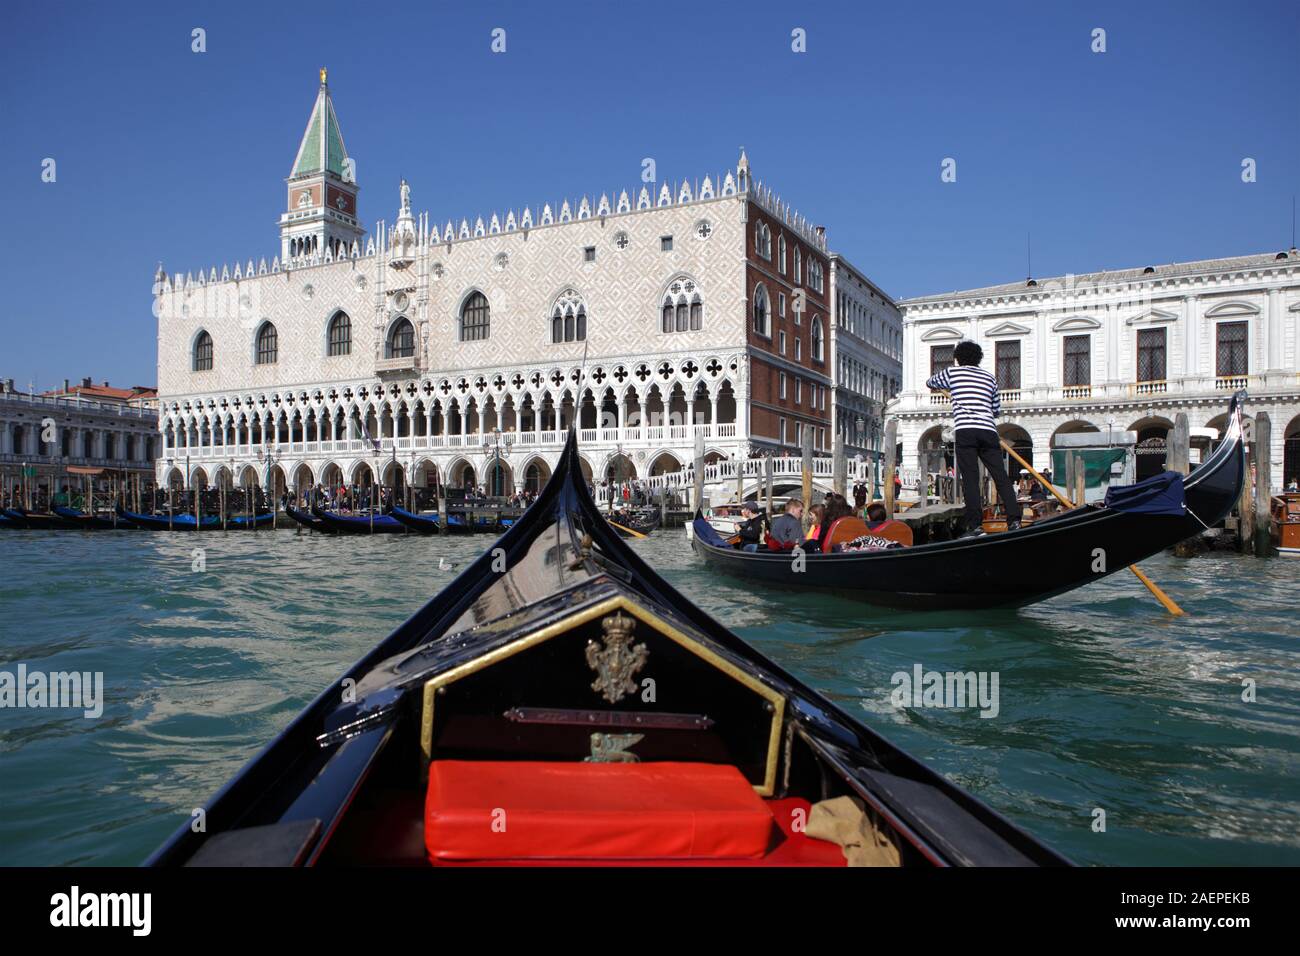 Vue sur le Palais des Doges à la place Saint Marc à partir de la gondole, Venise, Italie Banque D'Images